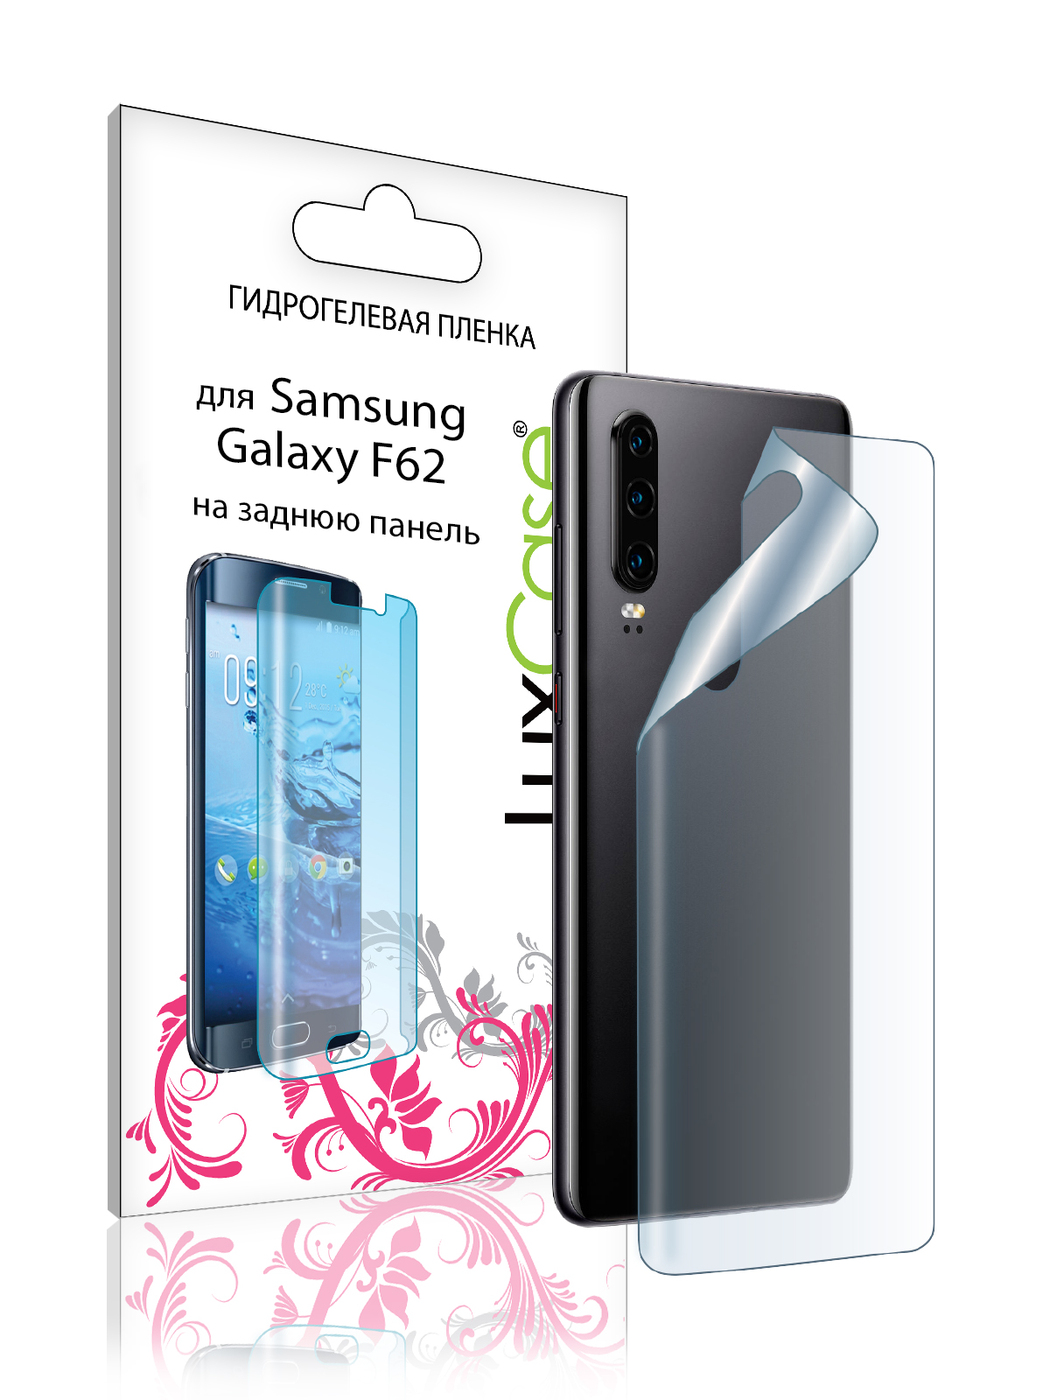 Пленка на заднюю панель LuxCase для Samsung Galaxy F62 0.14mm Transparent 86178 пленка на заднюю панель luxcase для samsung galaxy f62 0 14mm transparent 86178